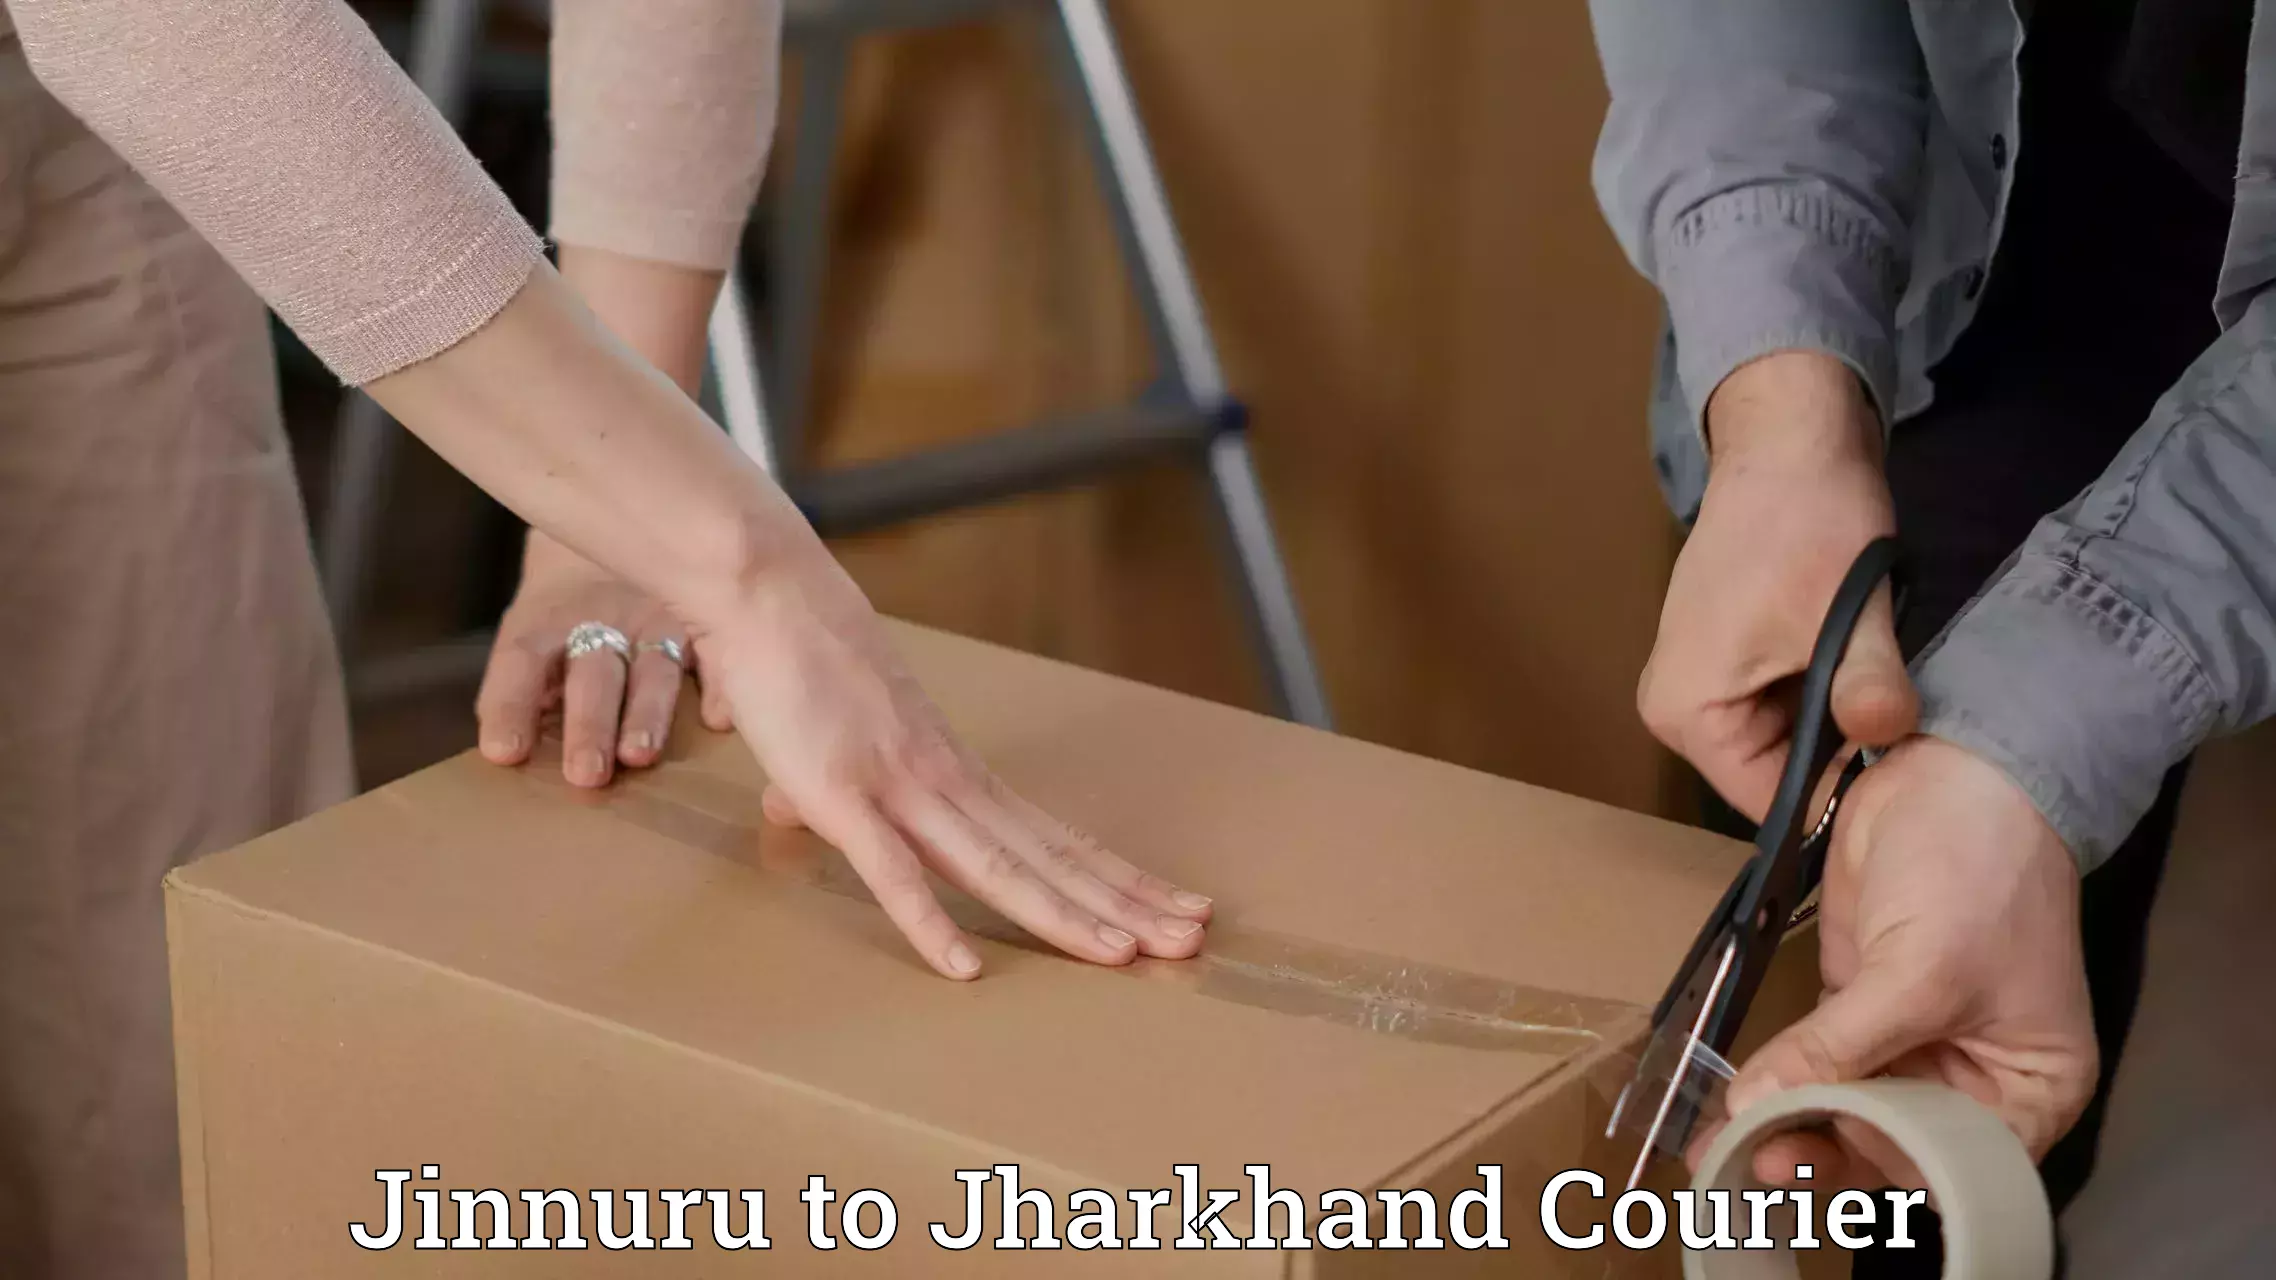 Bulk order courier Jinnuru to Jharkhand